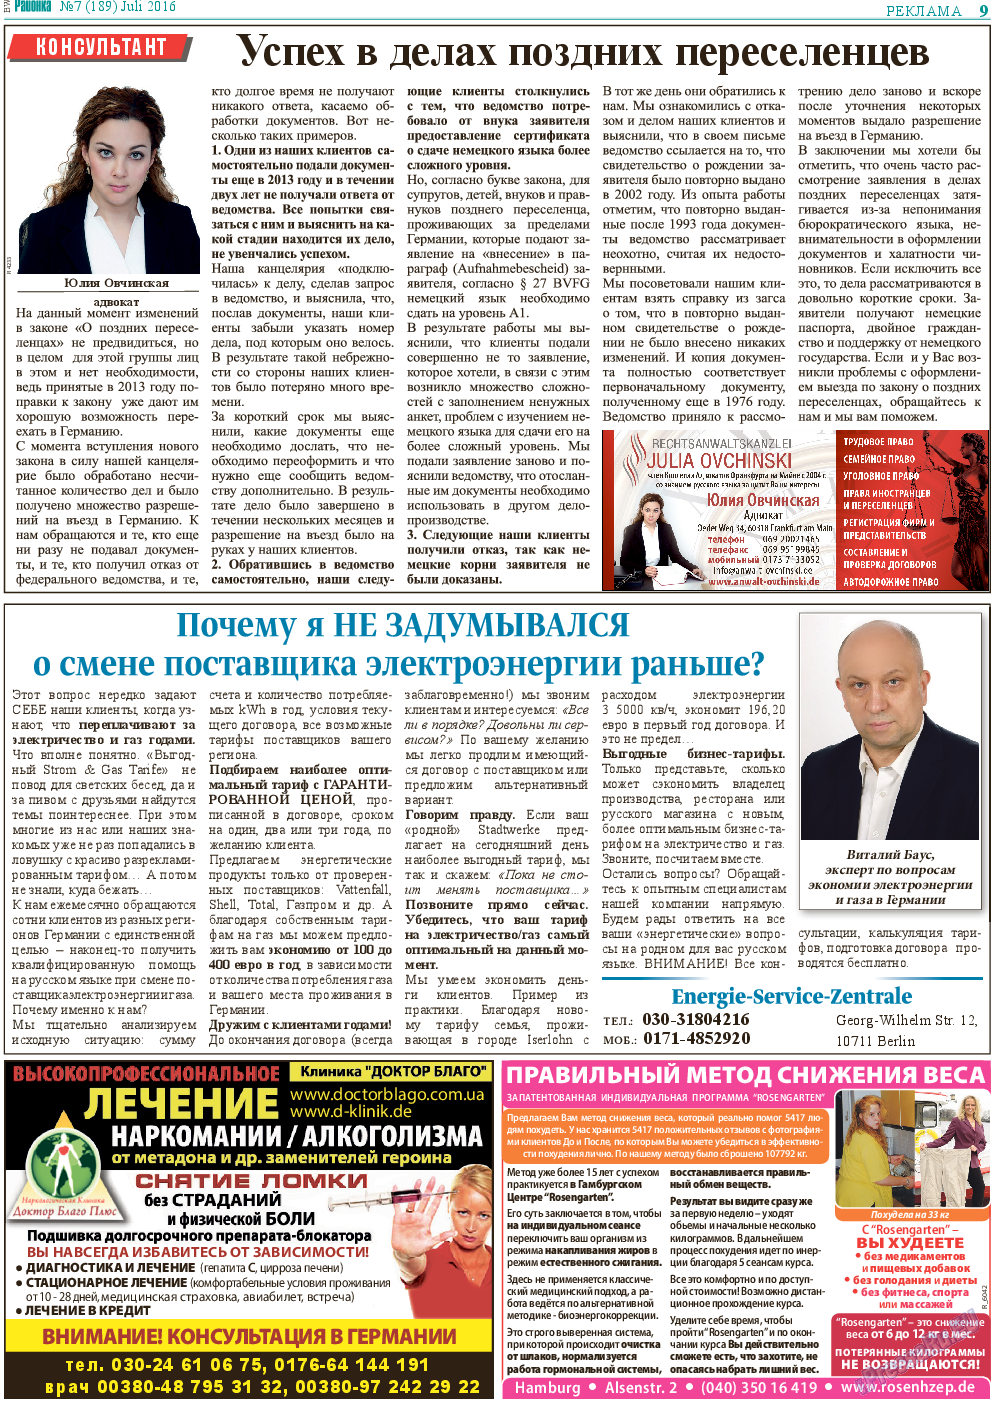 Районка-Süd-West, газета. 2016 №7 стр.9